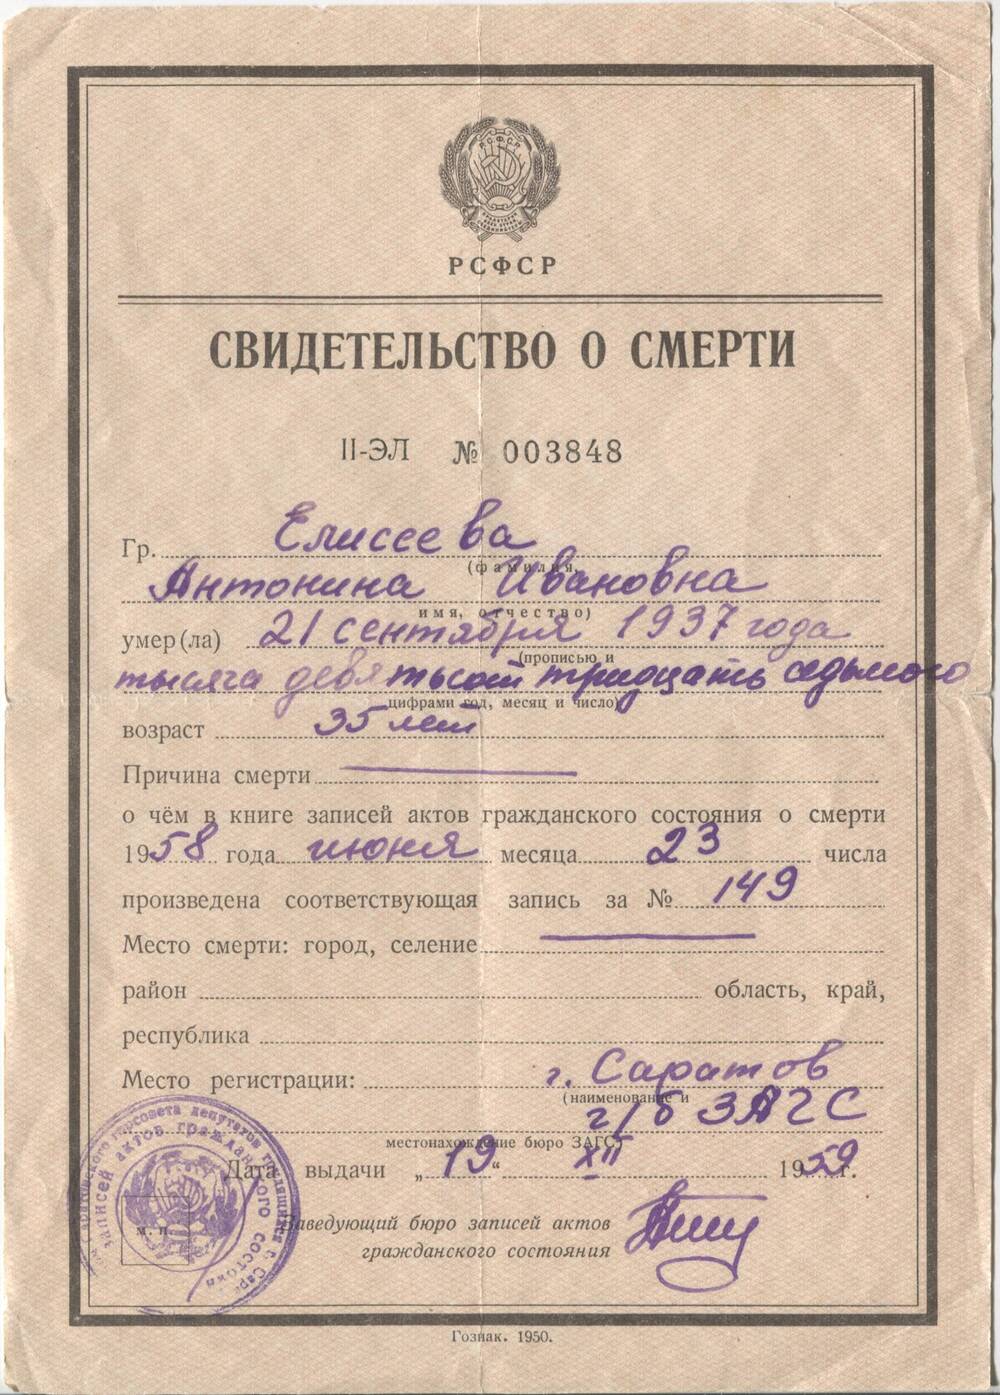 Свидетельство о смерти Елисеевой Антонины Ивановны 21 сентября 1937г. от 19.12.1959г.